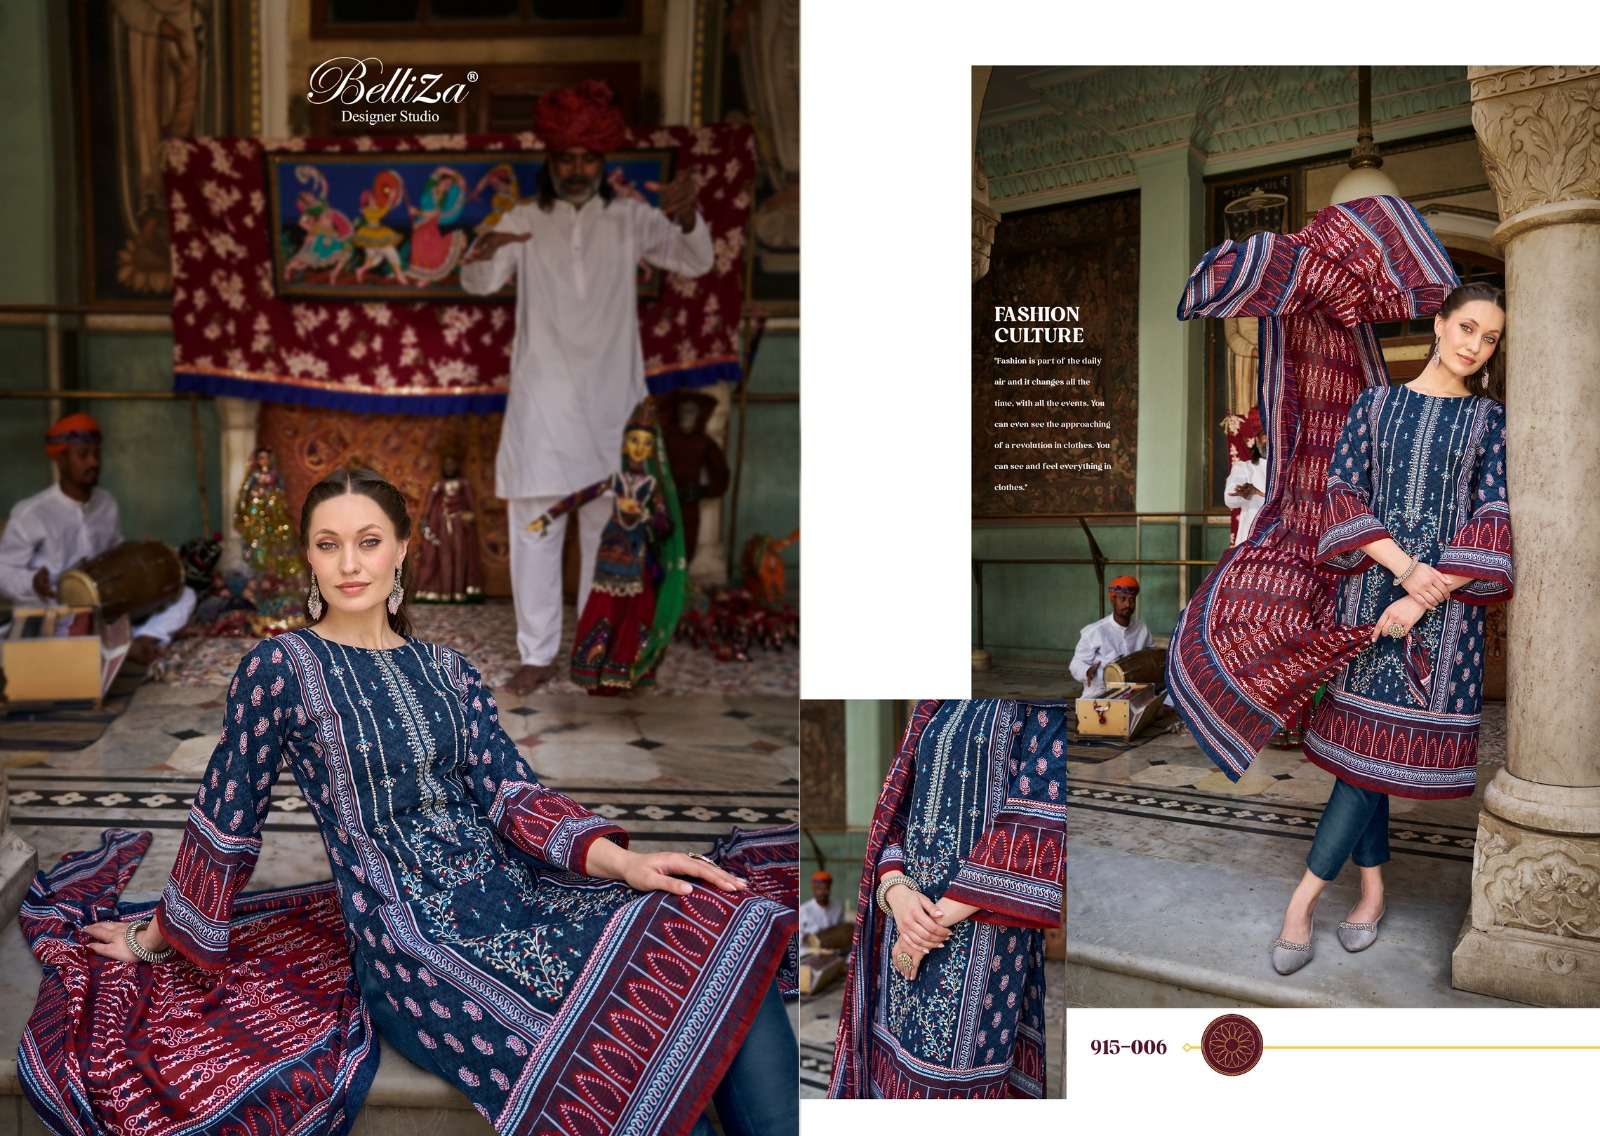 Belliza Bin Saeed Vol 4 Cotton Digital Printed Dress Material Wholesale catalog